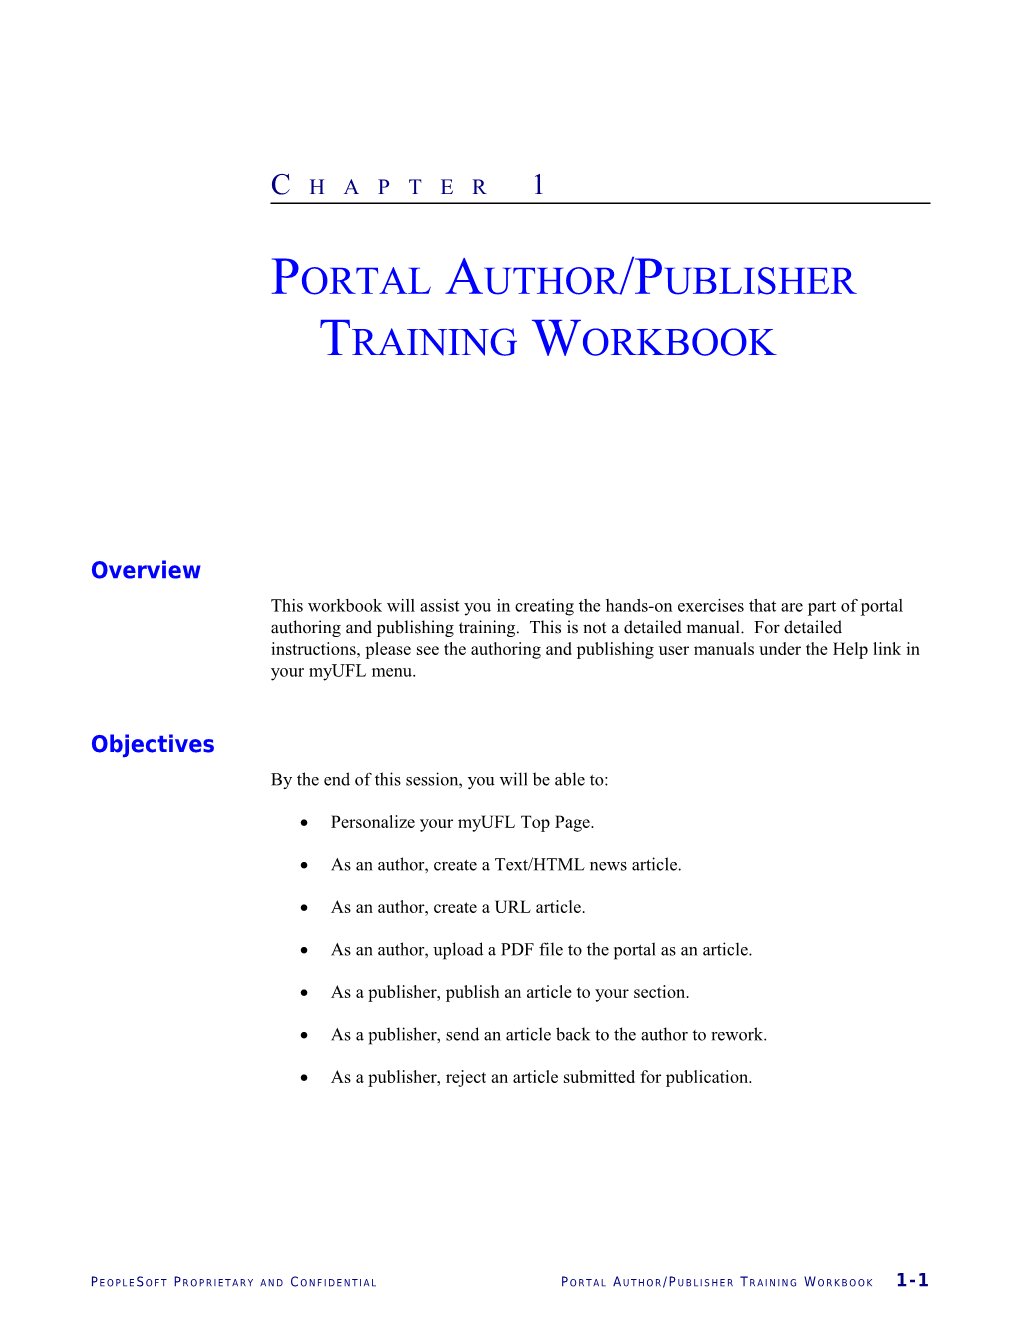 Portal Author/Publisher Training Workbook